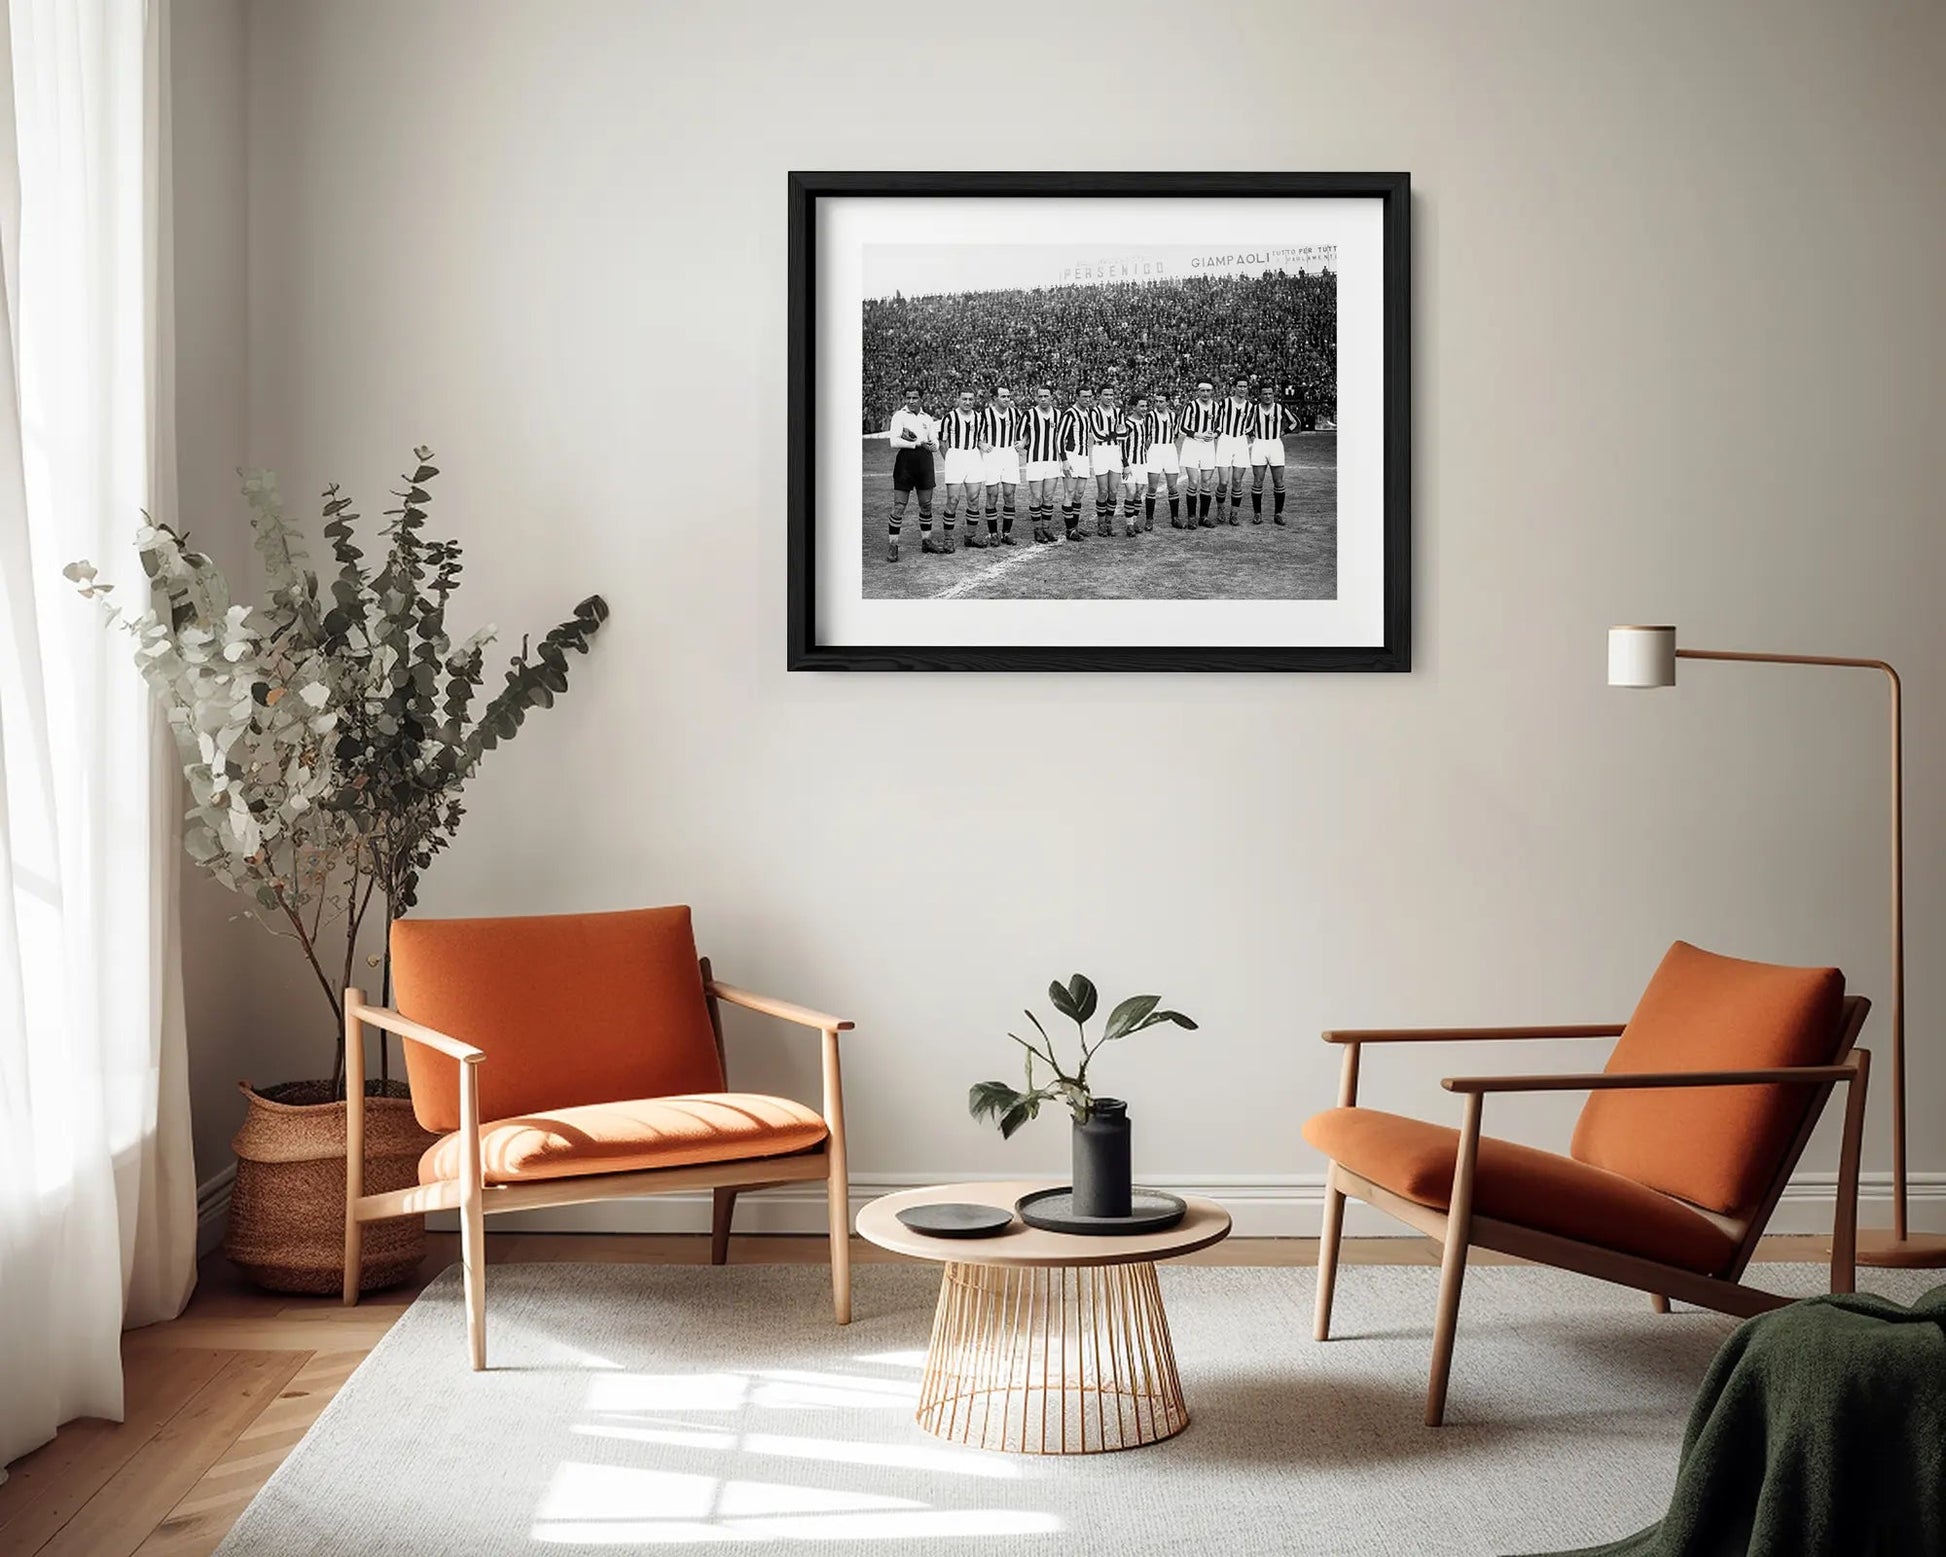 Juventus, Formazione, 1933 - Farabola Fotografia